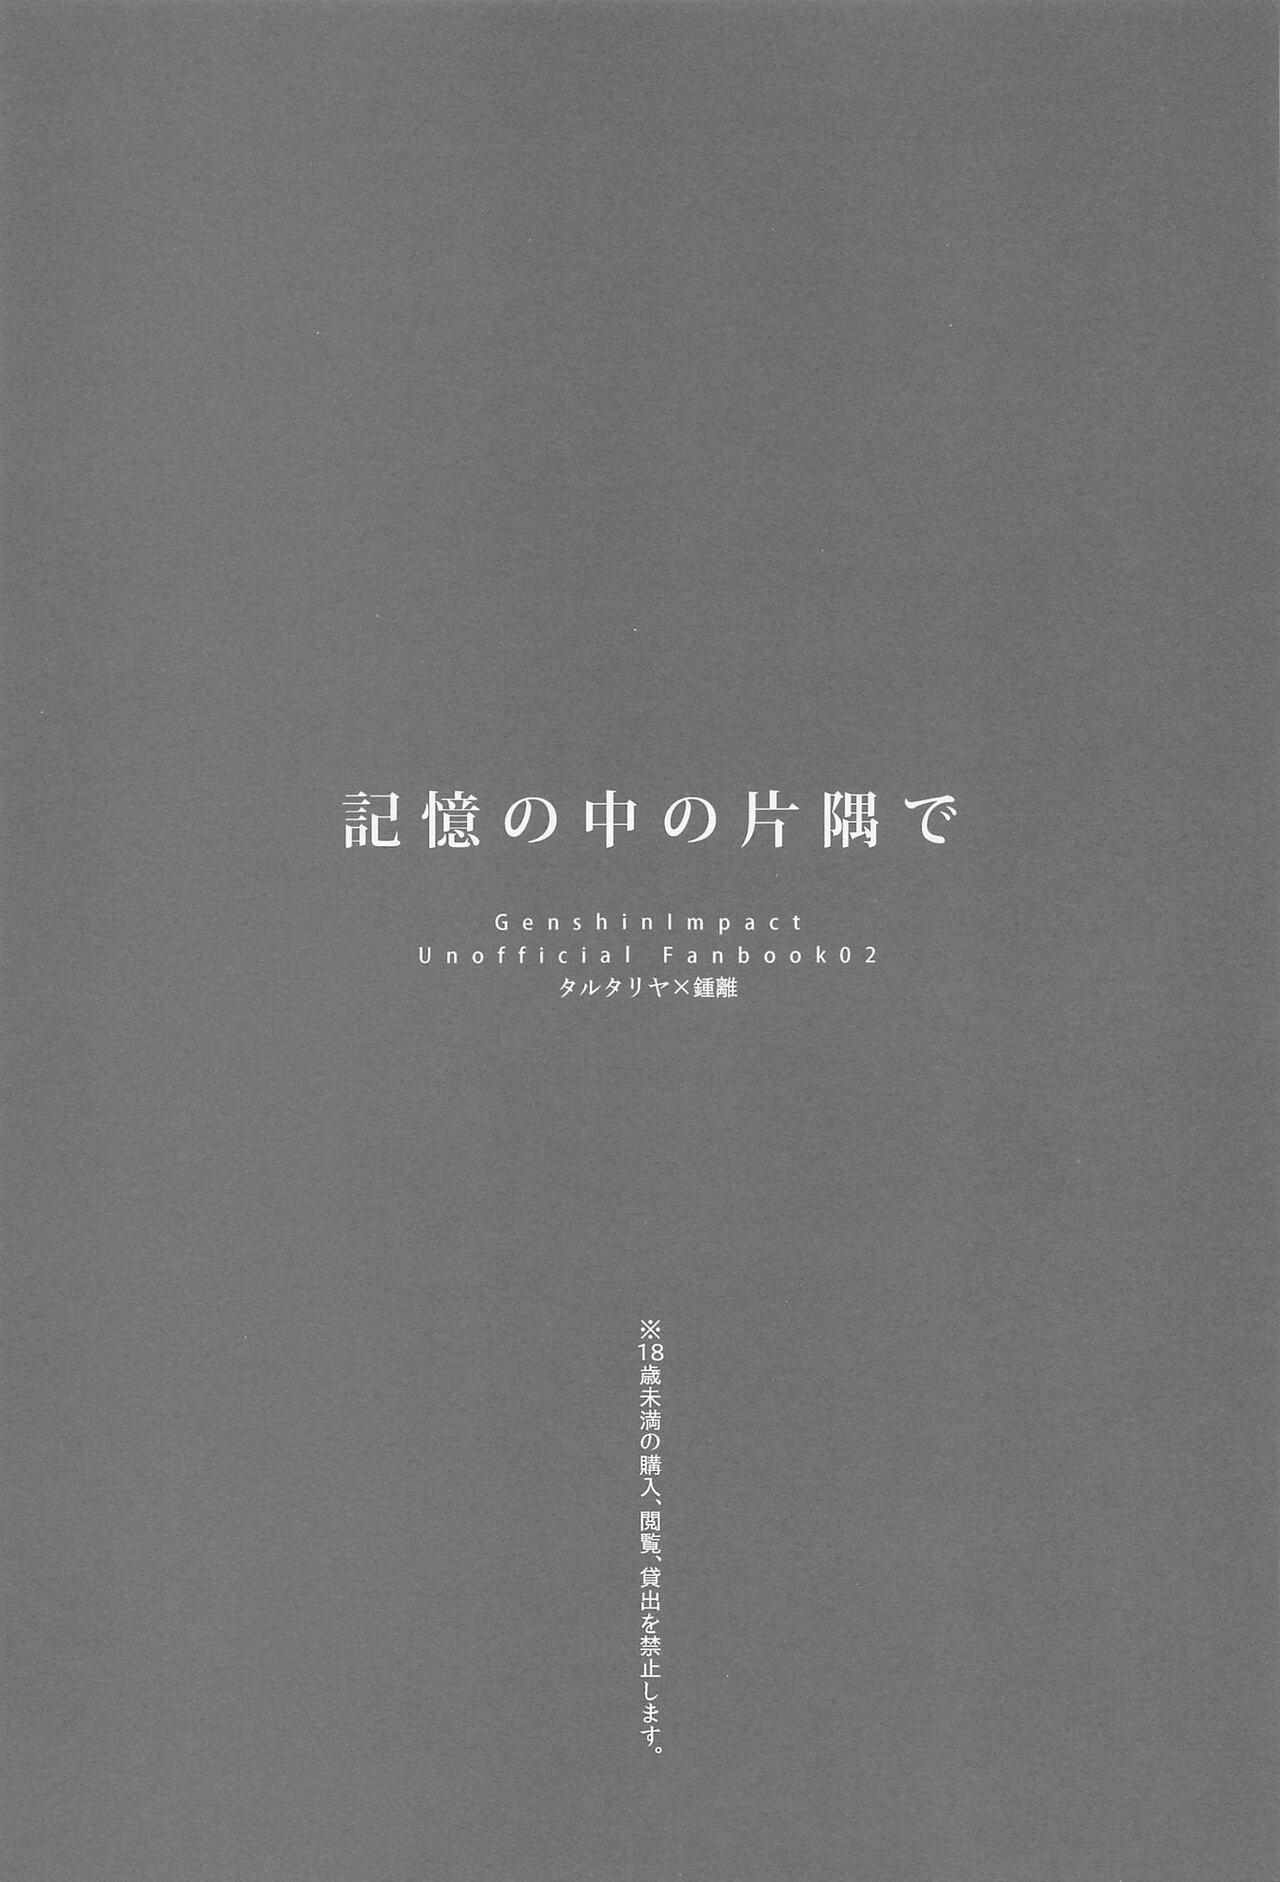 Underwear Kioku no Naka no Katasumi de - a Corner of Memory - Genshin impact Girlnextdoor - Page 2